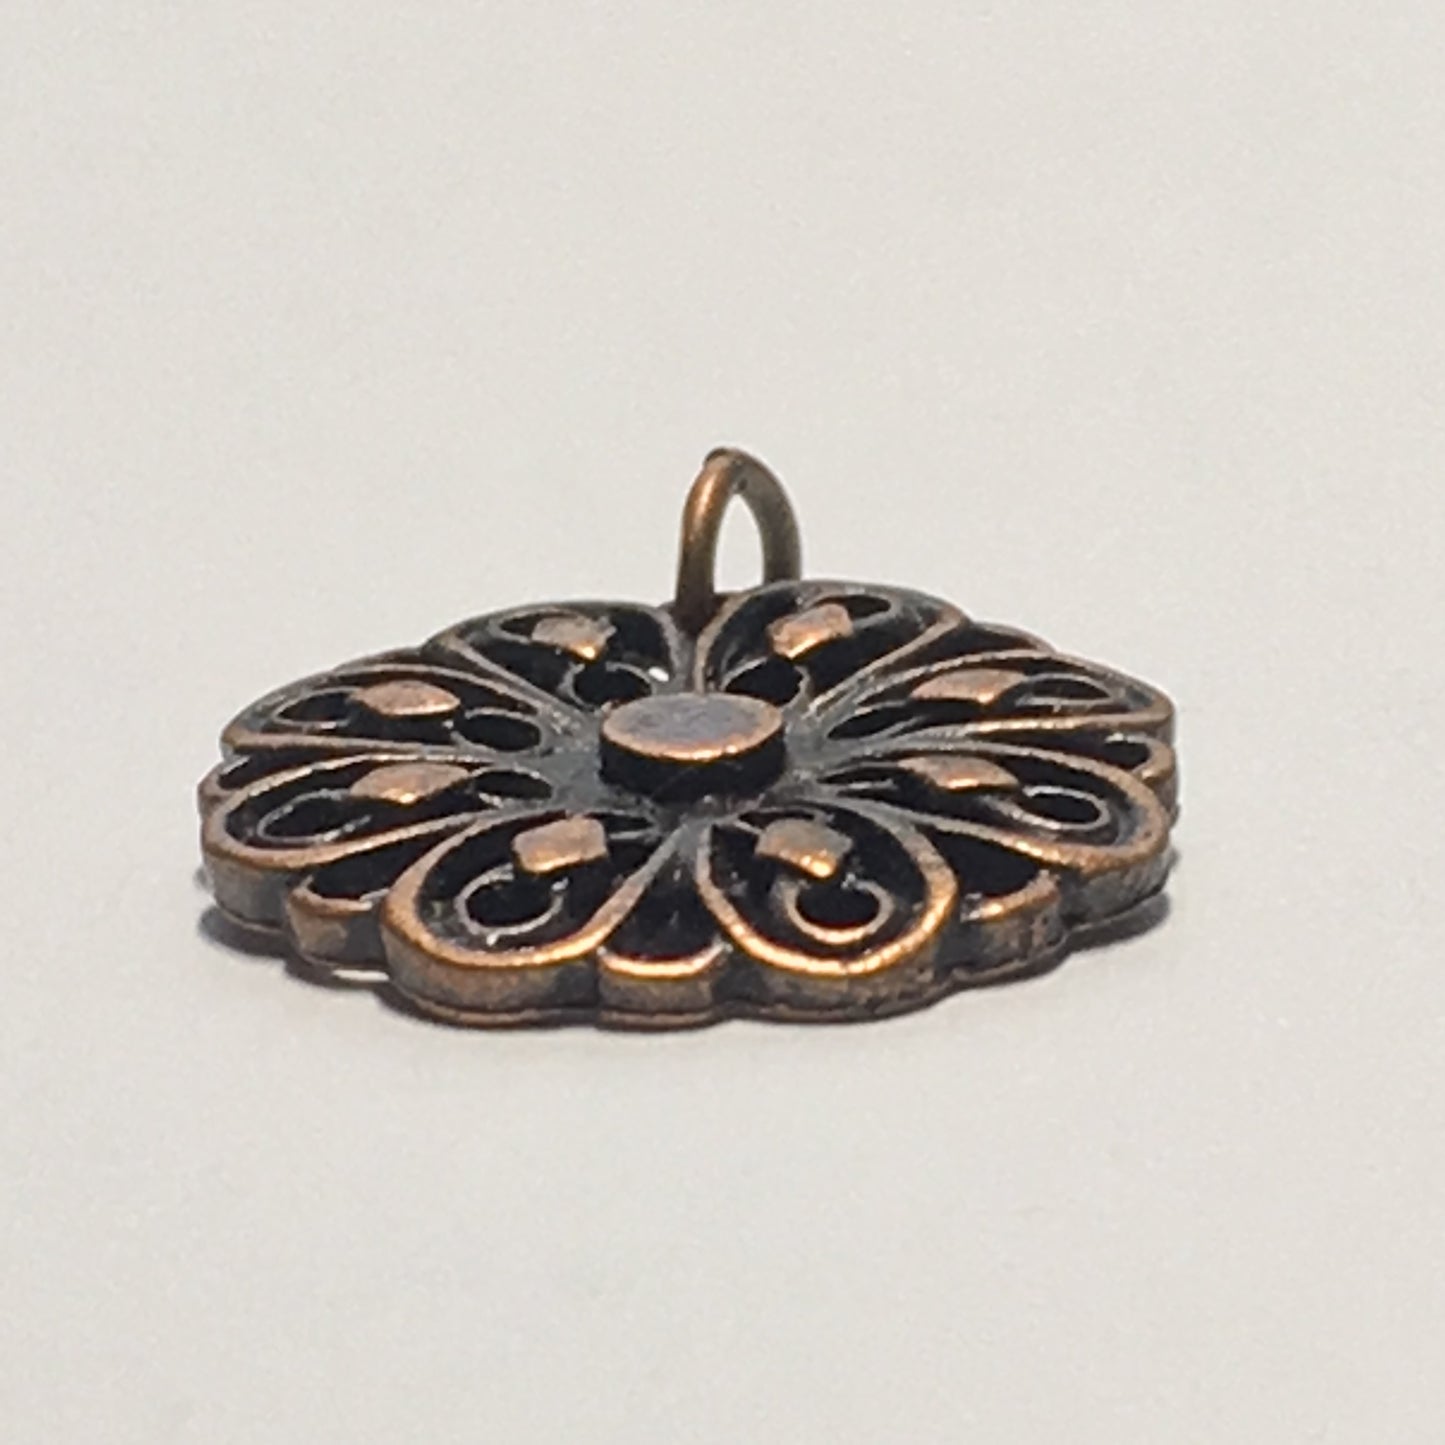 Antique Copper Flower Charm, 14 mm